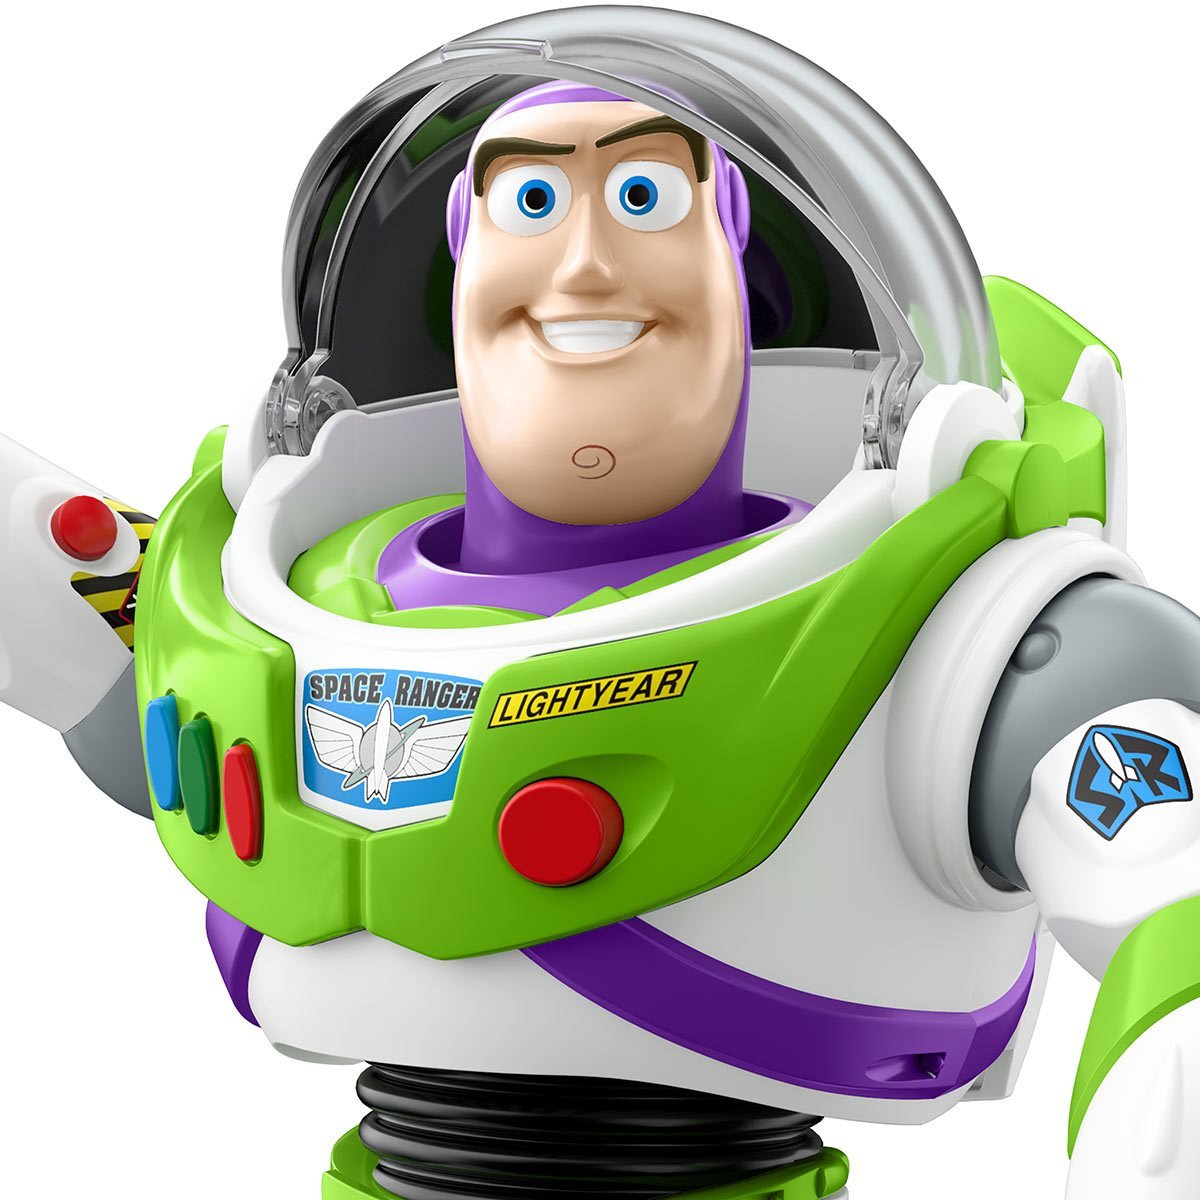 Disney Pixar Toy Story Buzz Lightyear Figure 